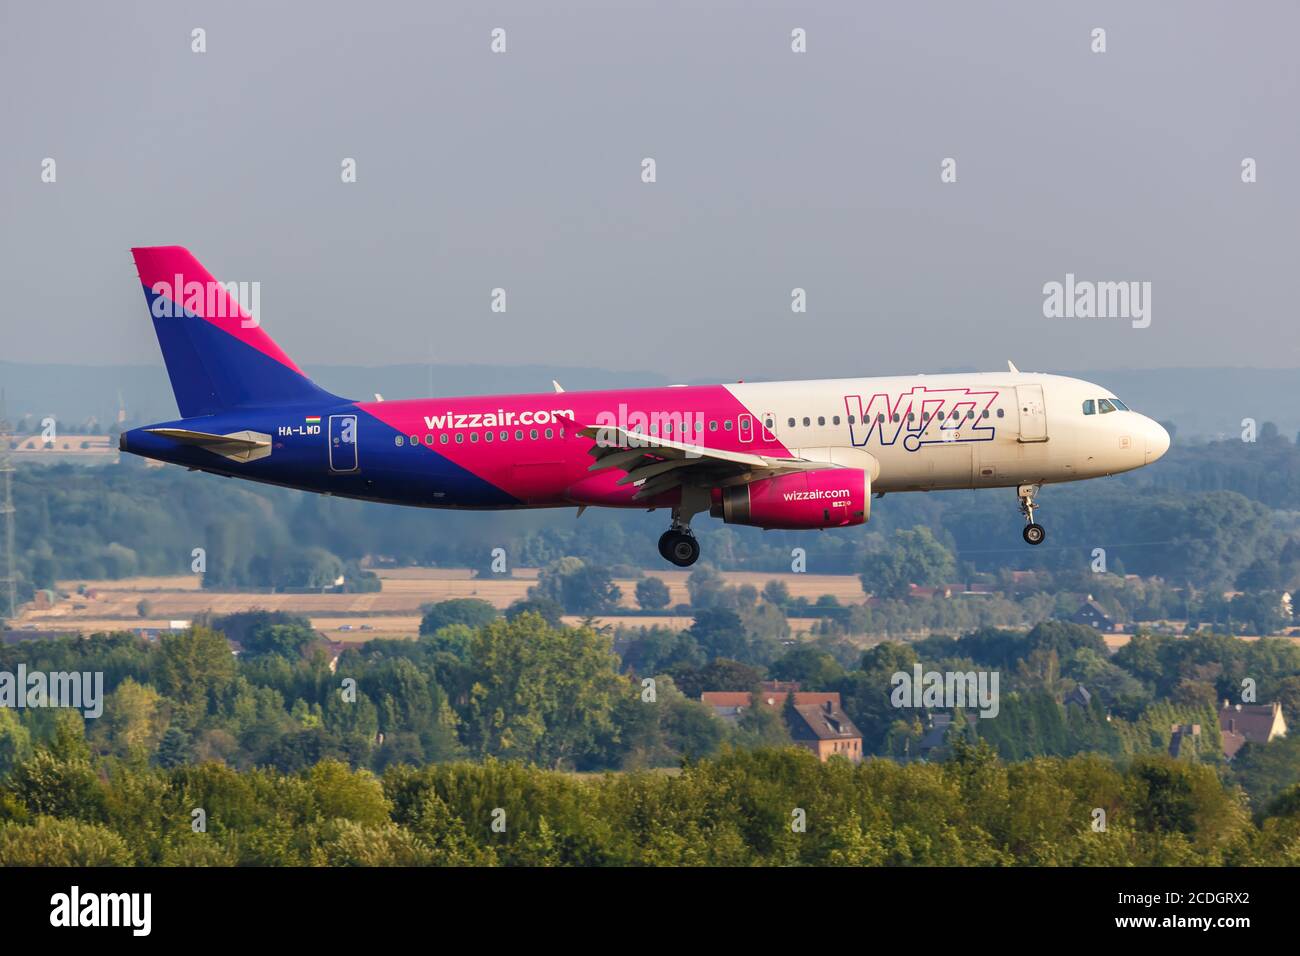 Dortmund, Allemagne - 10 août 2020 : avion Wizair Airbus A320 à l'aéroport de Dortmund (DTM) en Allemagne. Airbus est un fabricant européen d'avions bas Banque D'Images